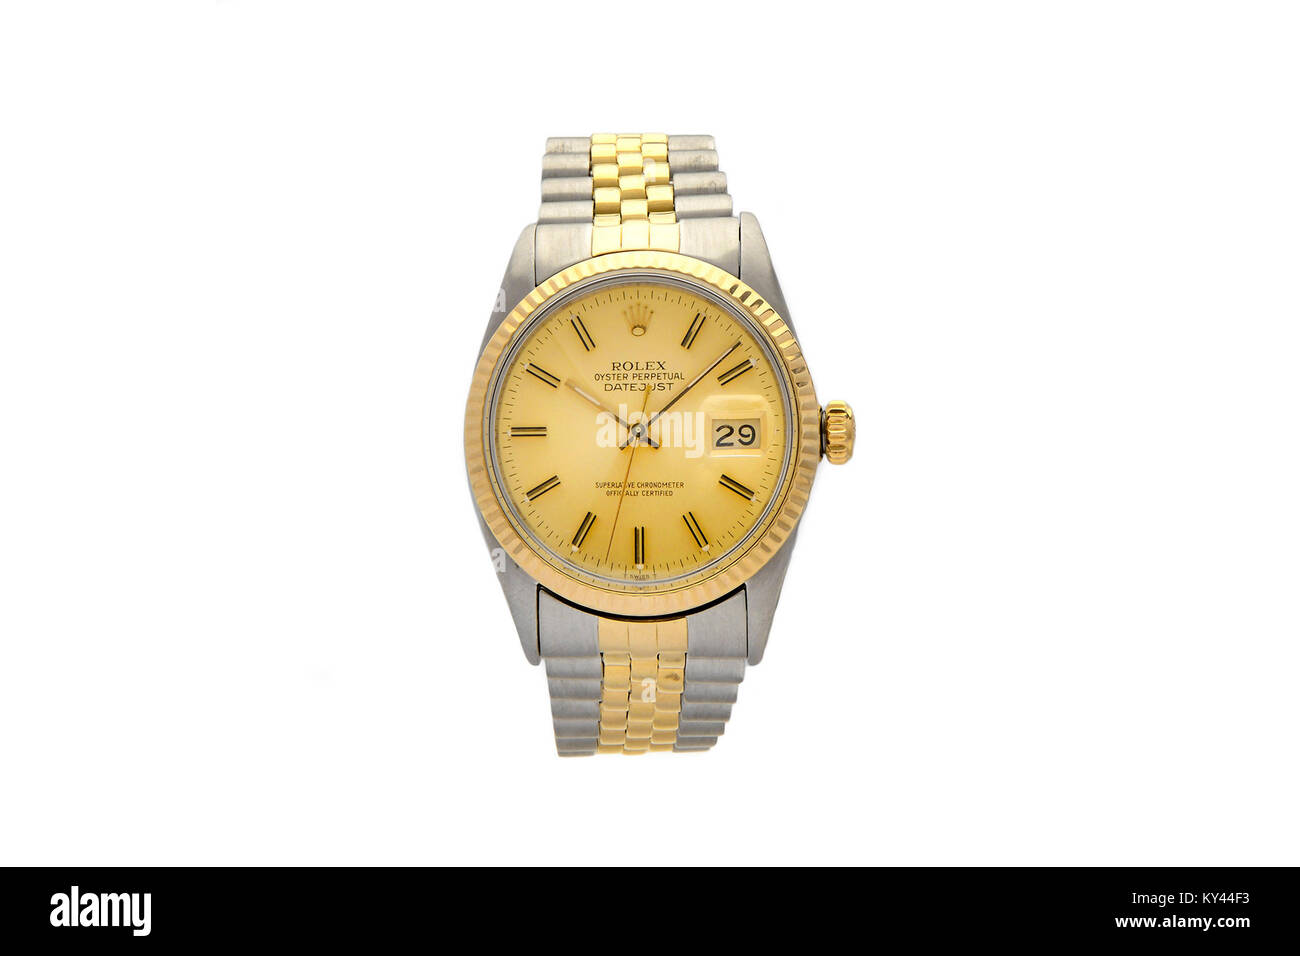 Rolex Oyster de acero inoxidable y oro reloj de hombre con cara de oro Foto de stock